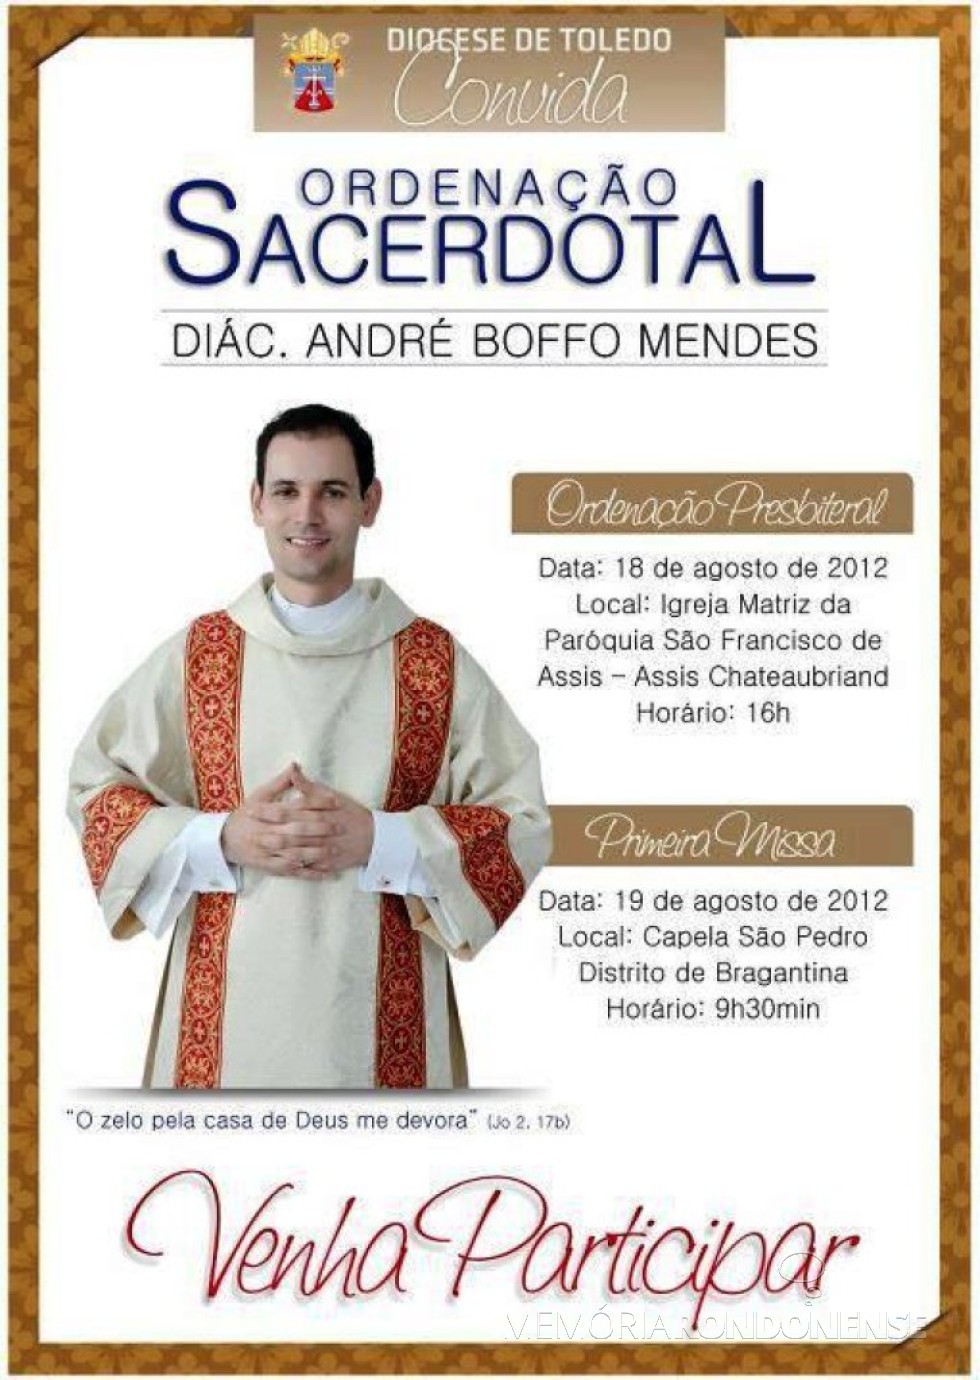 Convite da diocese de Toledo para a ordenação sacerdotal de André Boffo Mendes.
Imagem: Acervo Blog Catequese - FOTO 11 - 